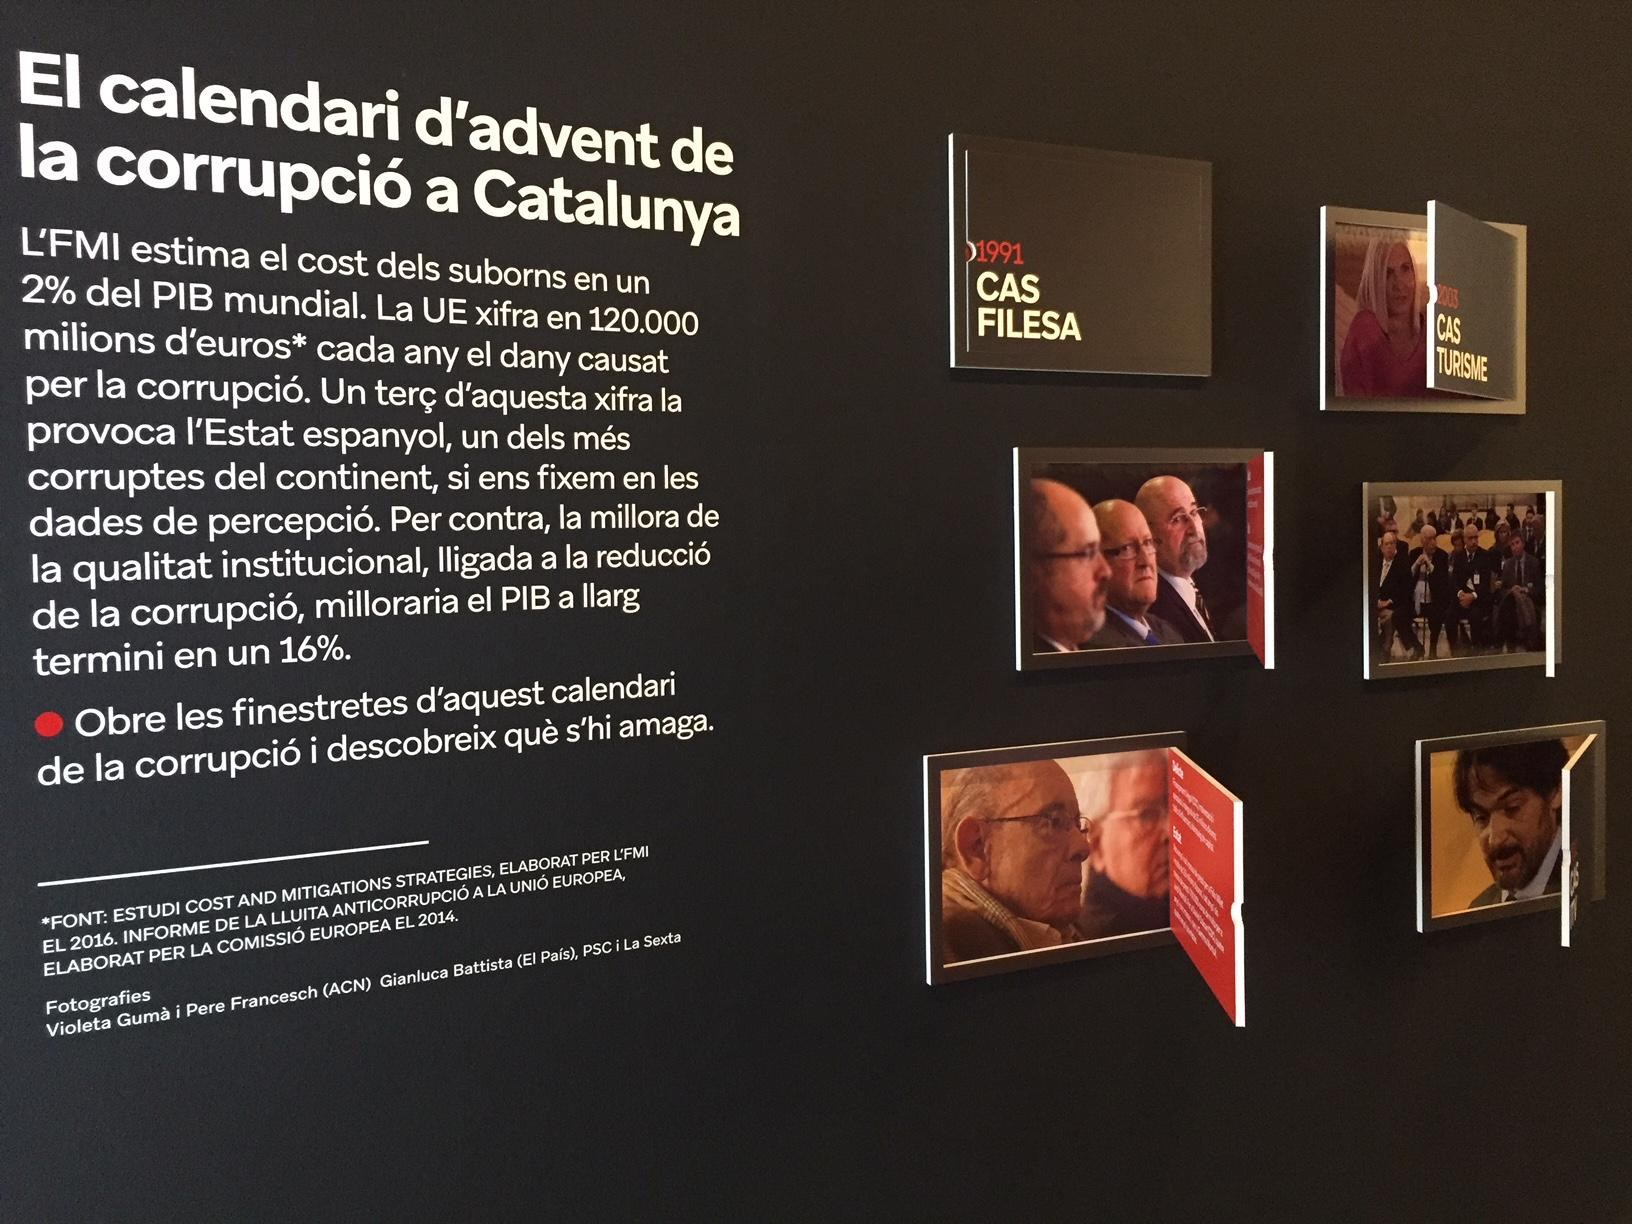 Imagen en la exposición anticorrupción con los distintos casos en Cataluña / CG